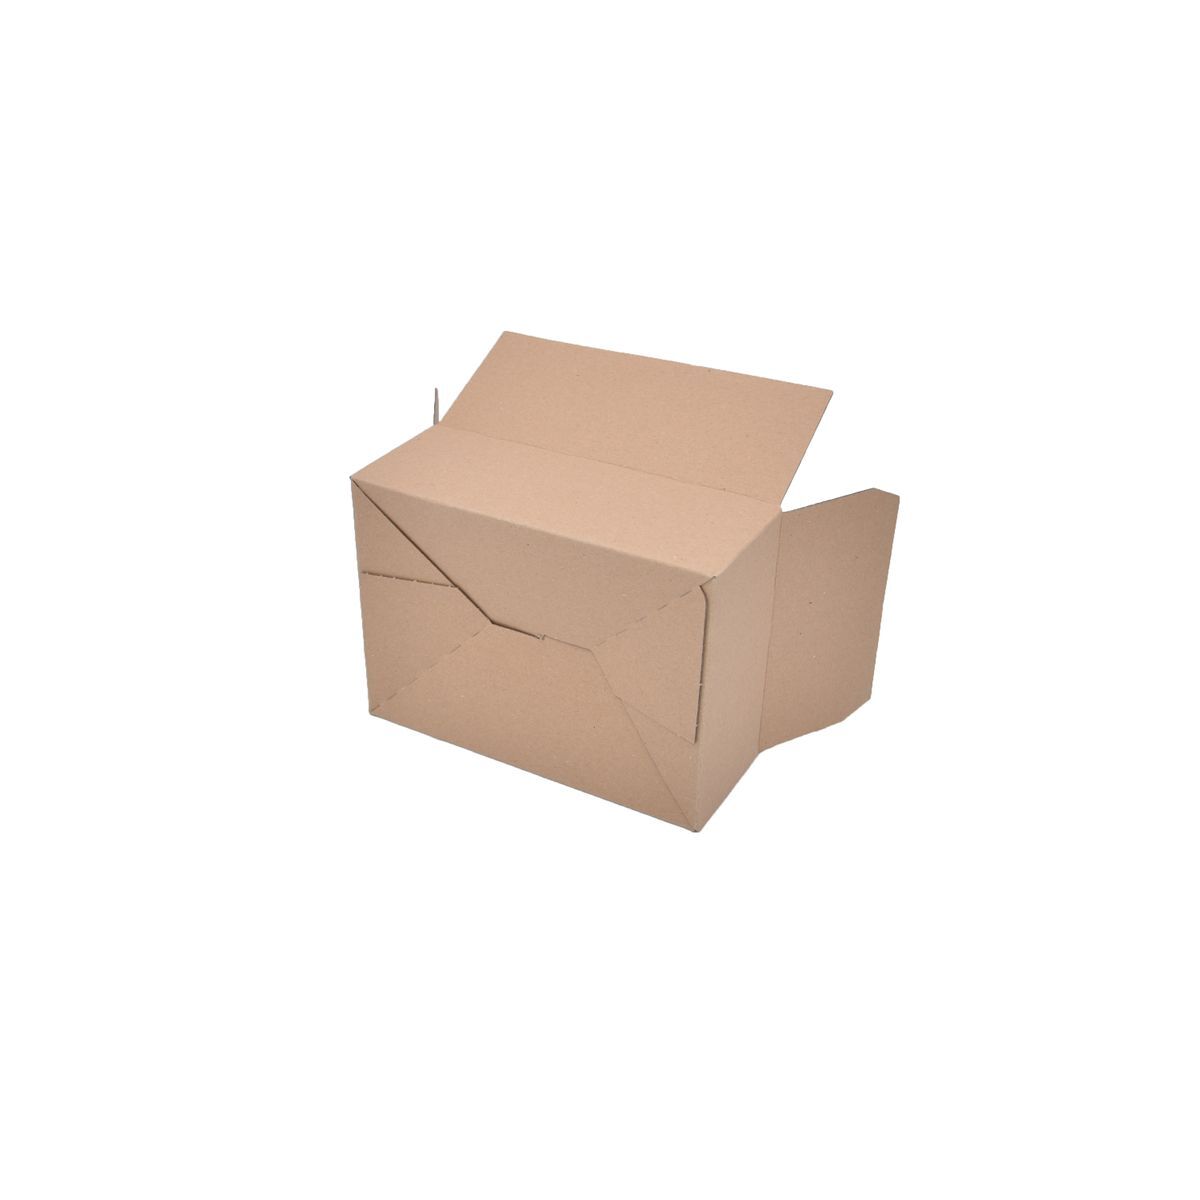 Versand- / Verpackungskartons, Kartonage - MINI mit Zusatzrillung 25 Stück je 220 x 160 x 75mm